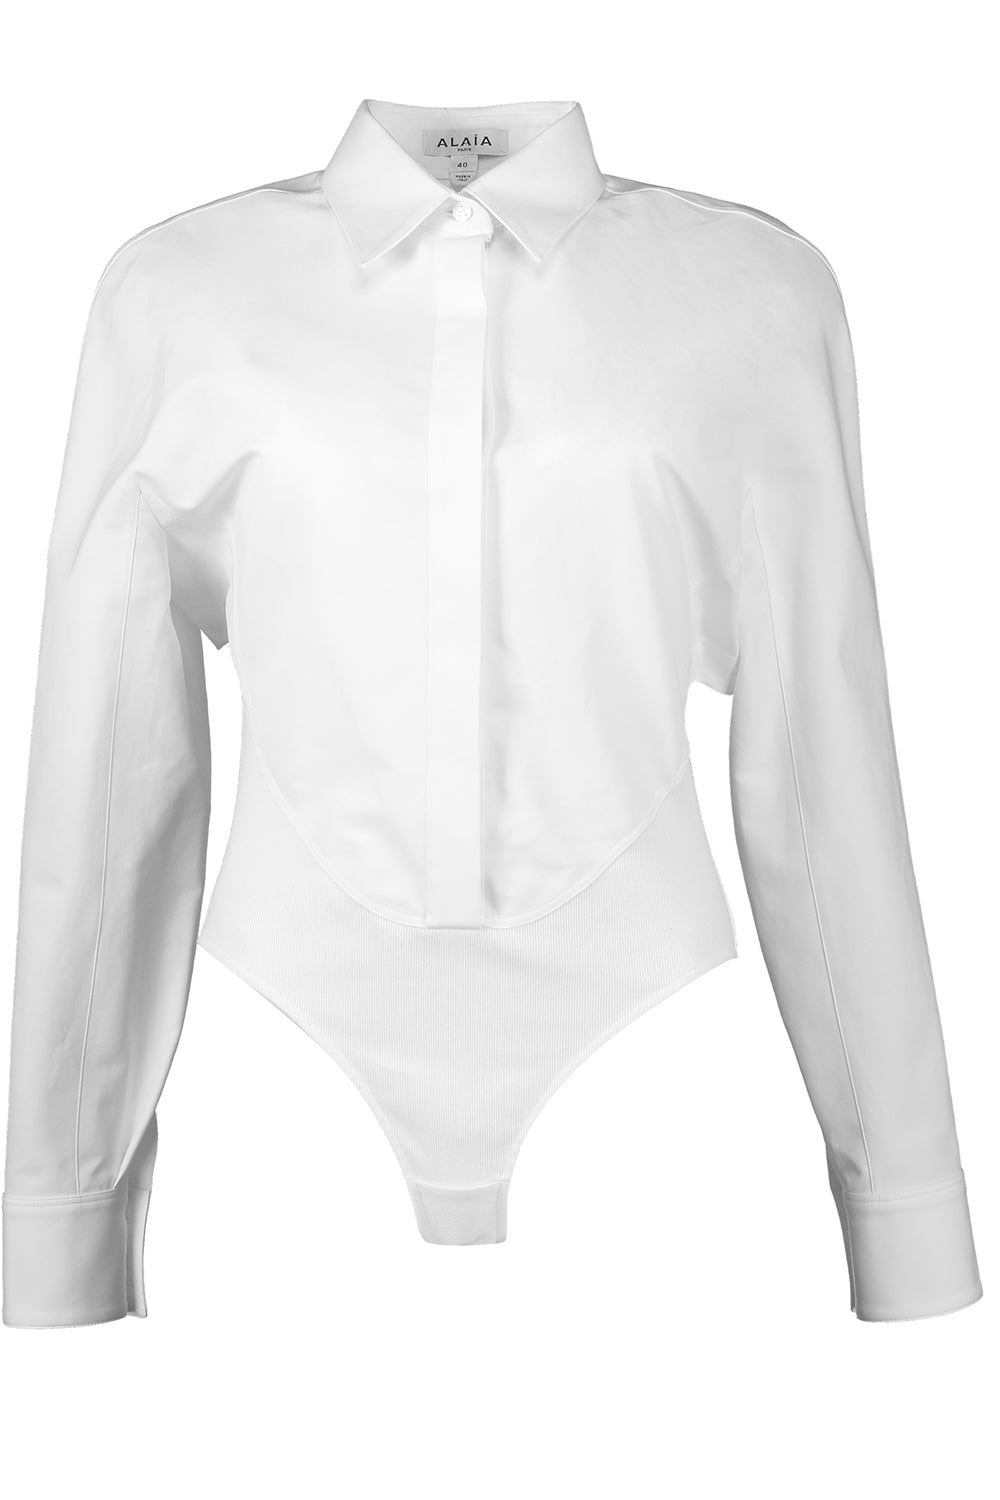 Layer Shirt Bodysuit CLOTHINGTOPBLOUSE ALAÏA   